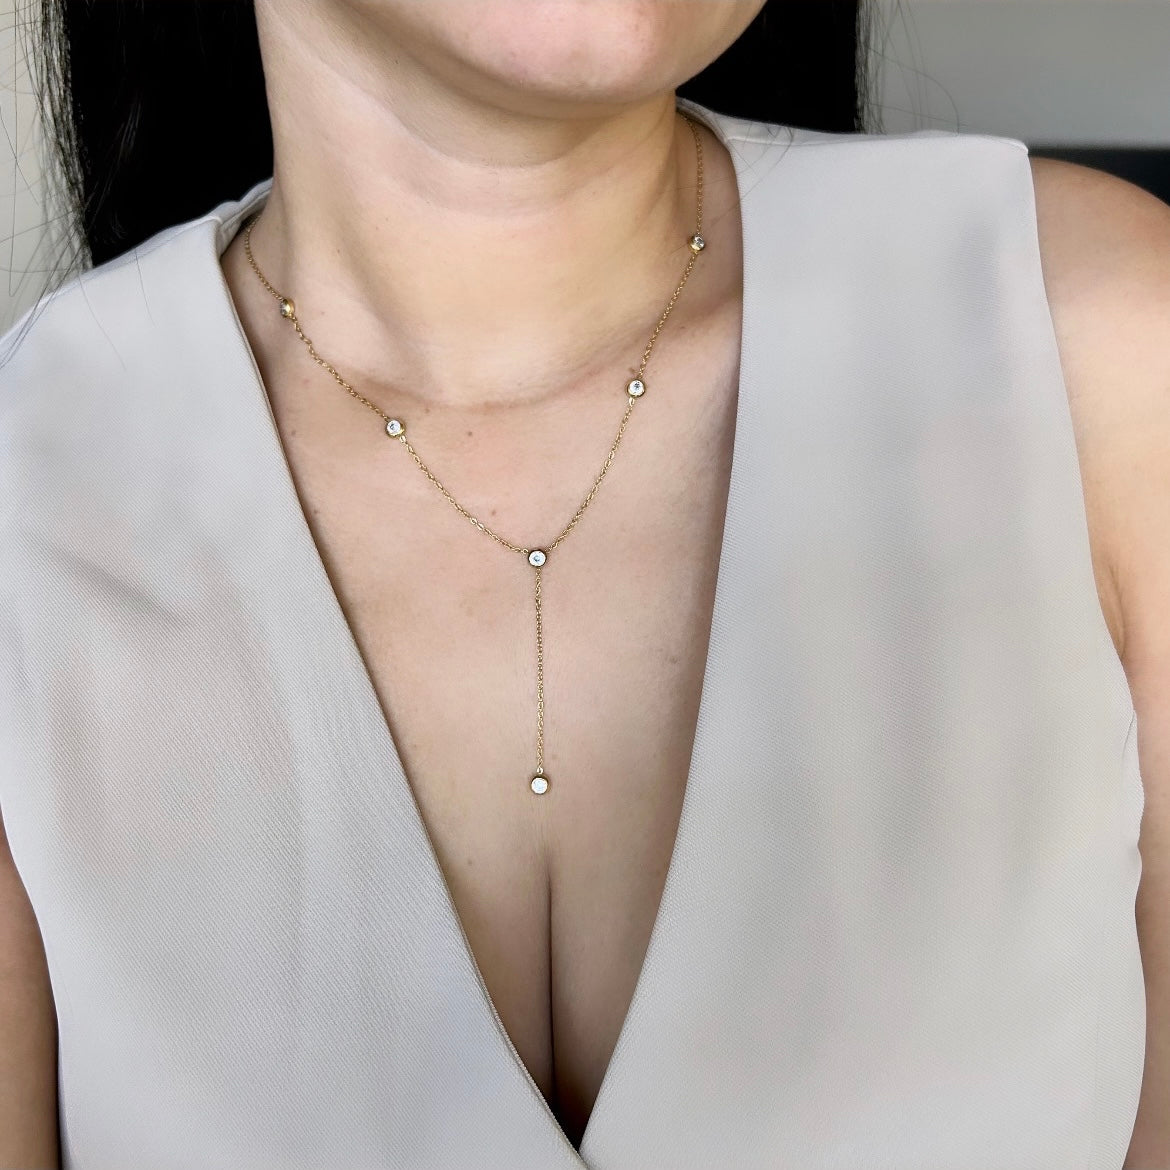 Osaka necklace